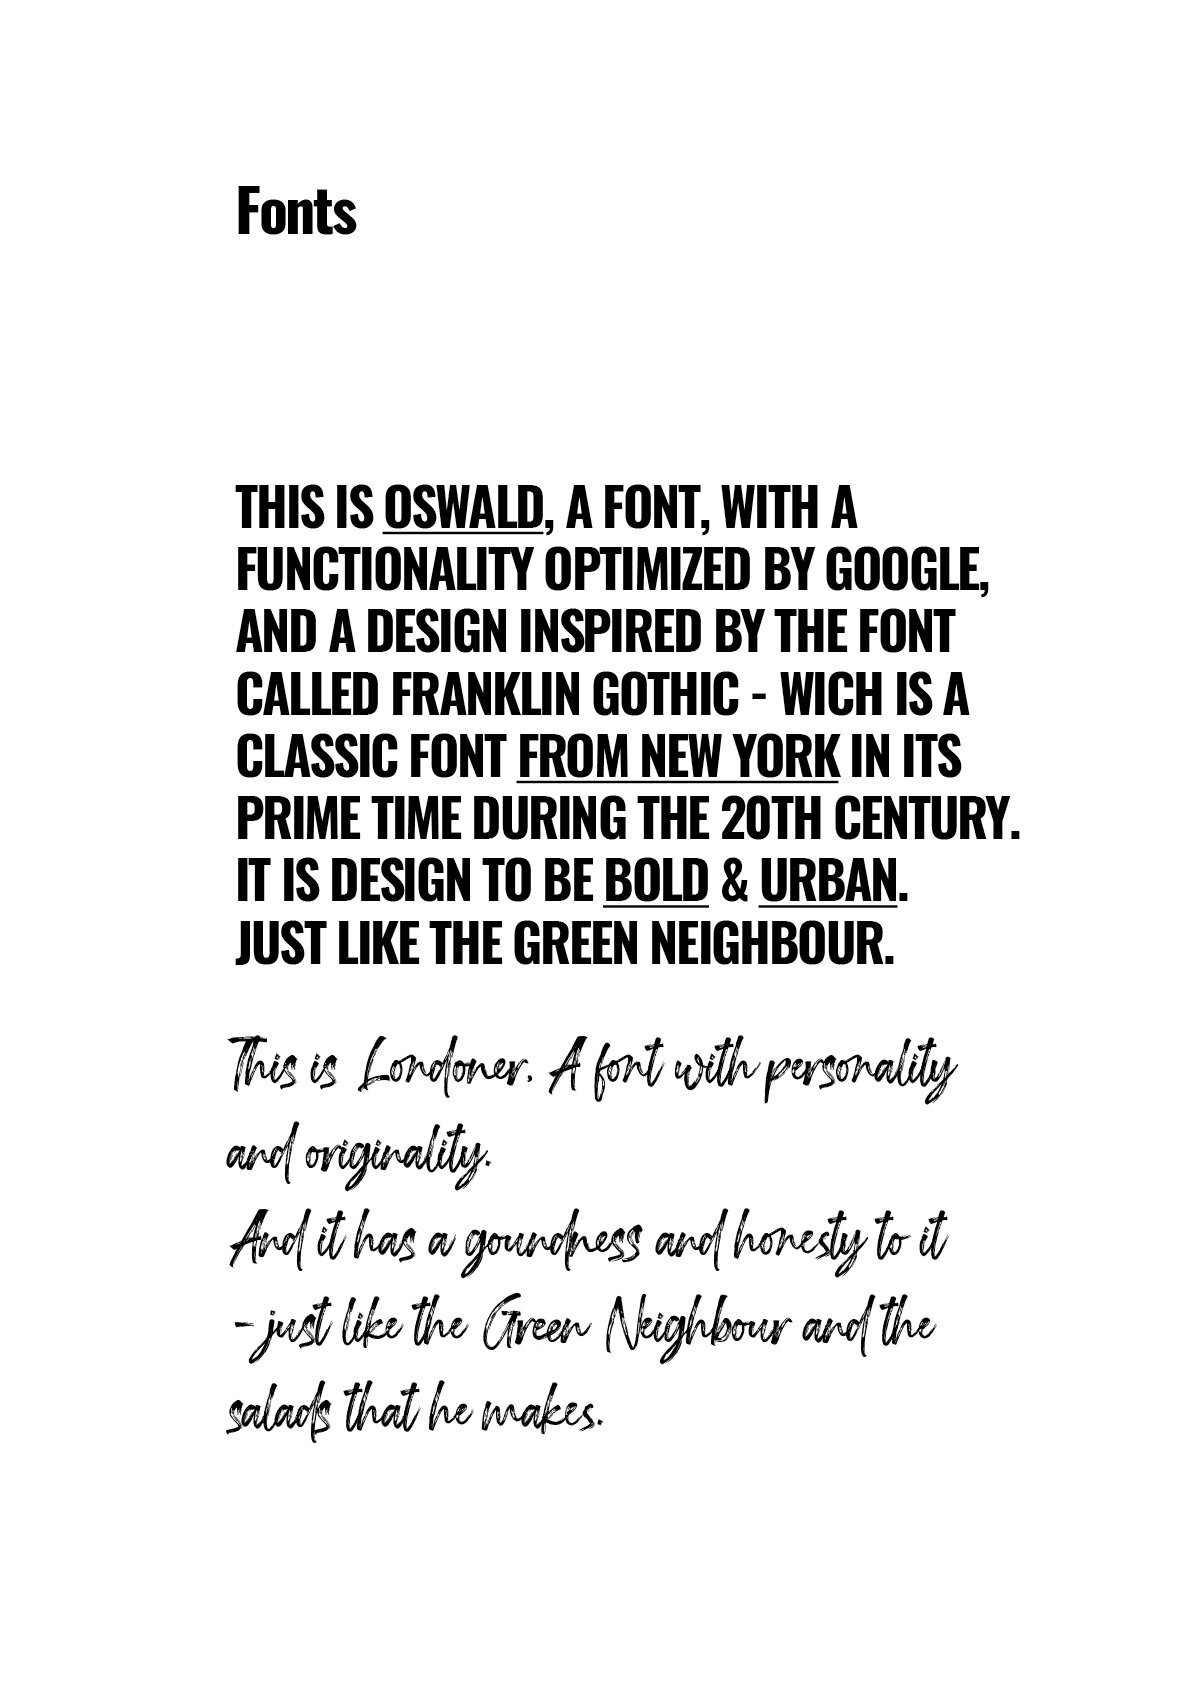 green-neighbour copy.jpg